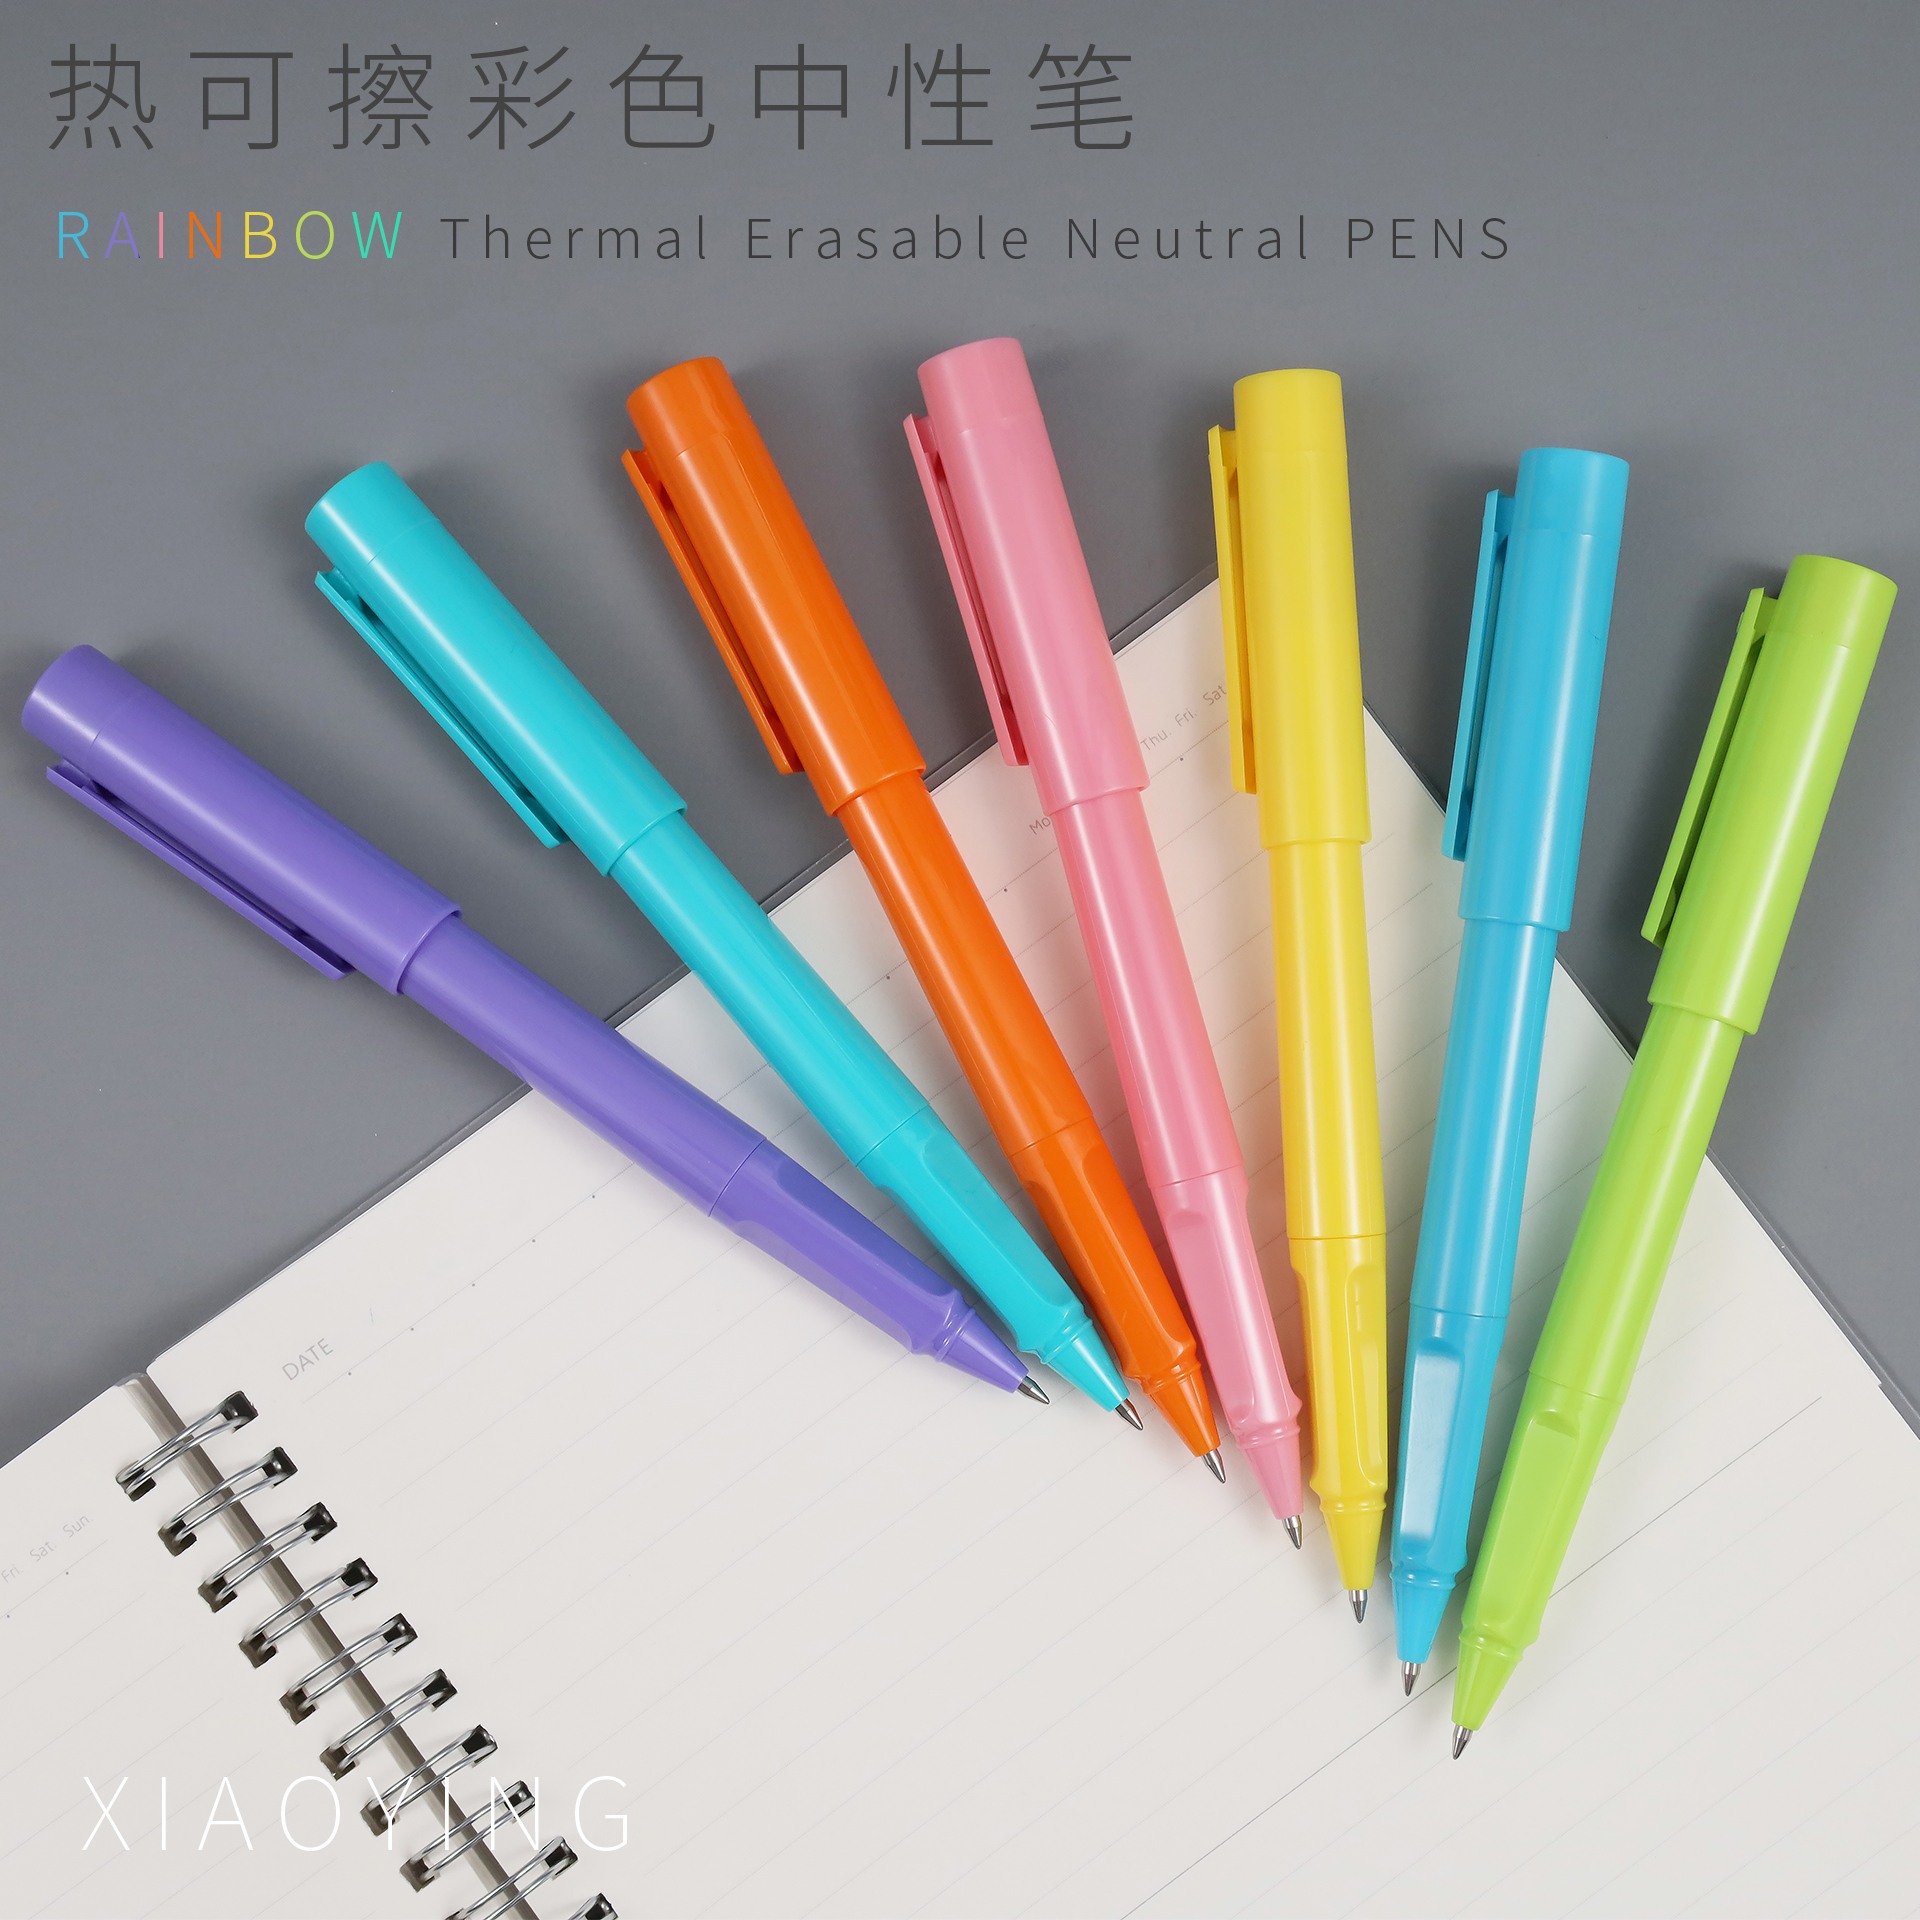 山东小赢创意供应热敏可擦彩色中性笔 可擦笔 擦写笔 彩色笔 热敏可擦彩色中性笔图片